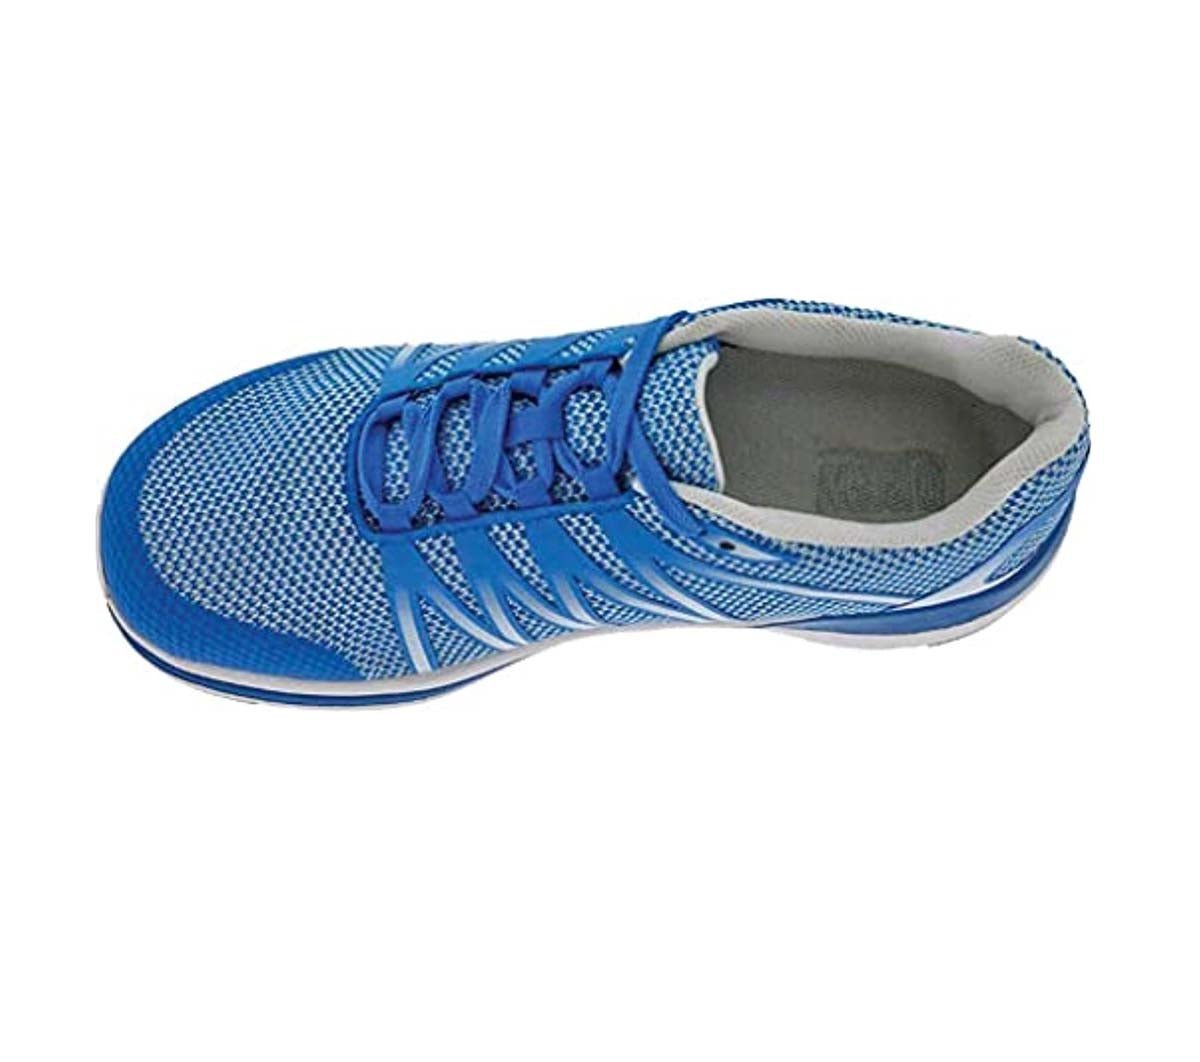 DREW BALANCE WOMEN'S SNEAKER IN BLUE MESH COMBO - TLW Shoes